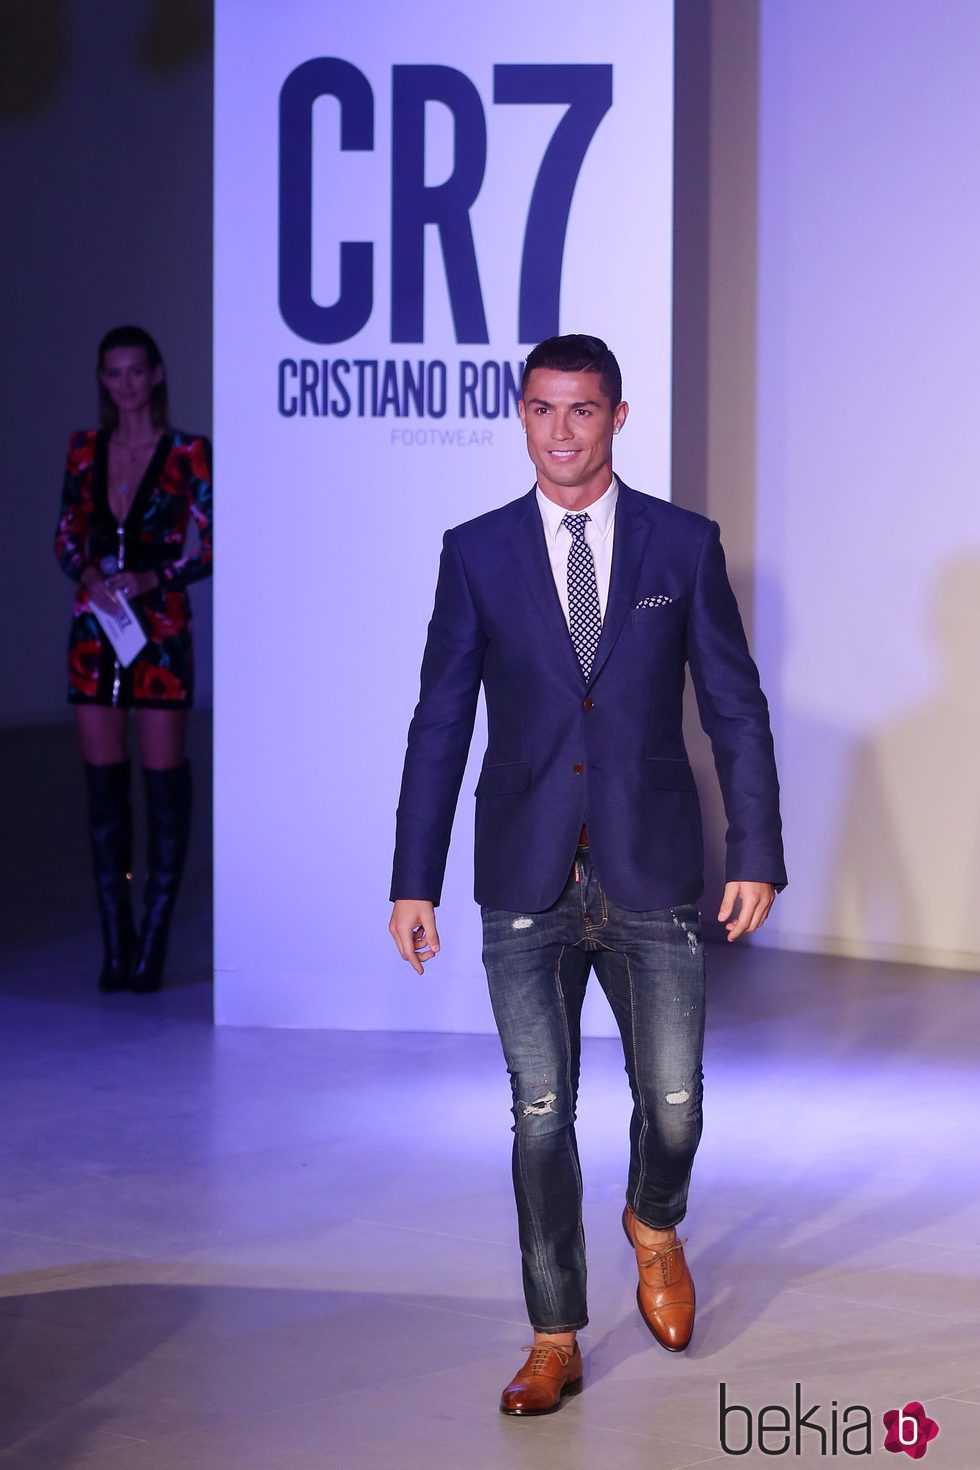 Cristiano Ronaldo ejerciendo de modelo en la presentación de su nueva colección de zapatos